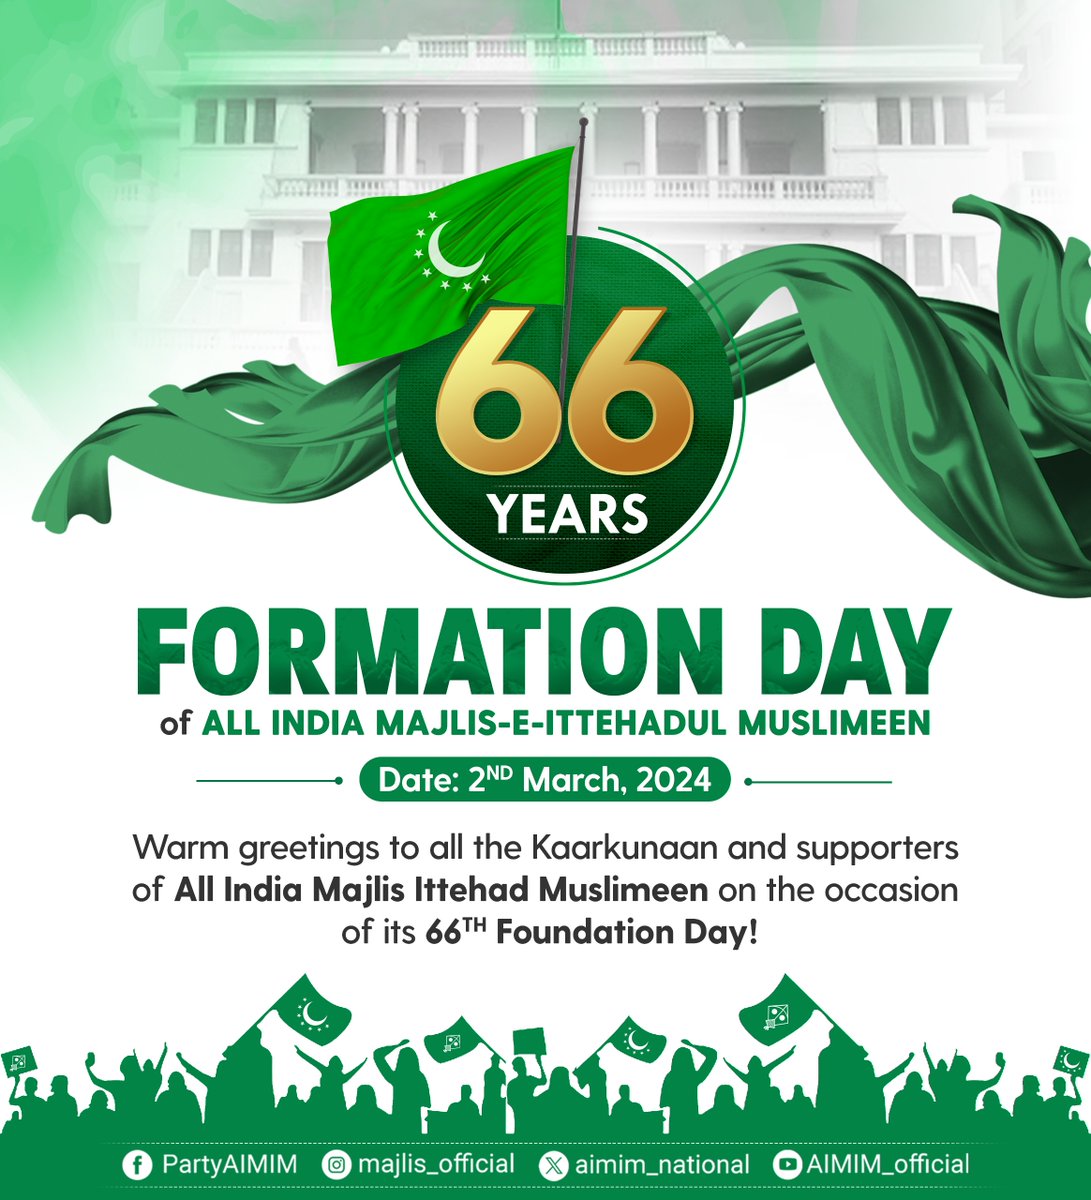 ऑल इंडिया मजलिस-ए-इत्तेहादुल मुस्लिमीन के 66वां स्थापना दिवस के अवसर पर AIMIM के तमाम कार्यकर्ताओं और समर्थकों को दिल की गहराईयों से मुबारकबाद 🎉🎊❤️💐 -Barrister @asadowaisi #AIMIMFormationDay